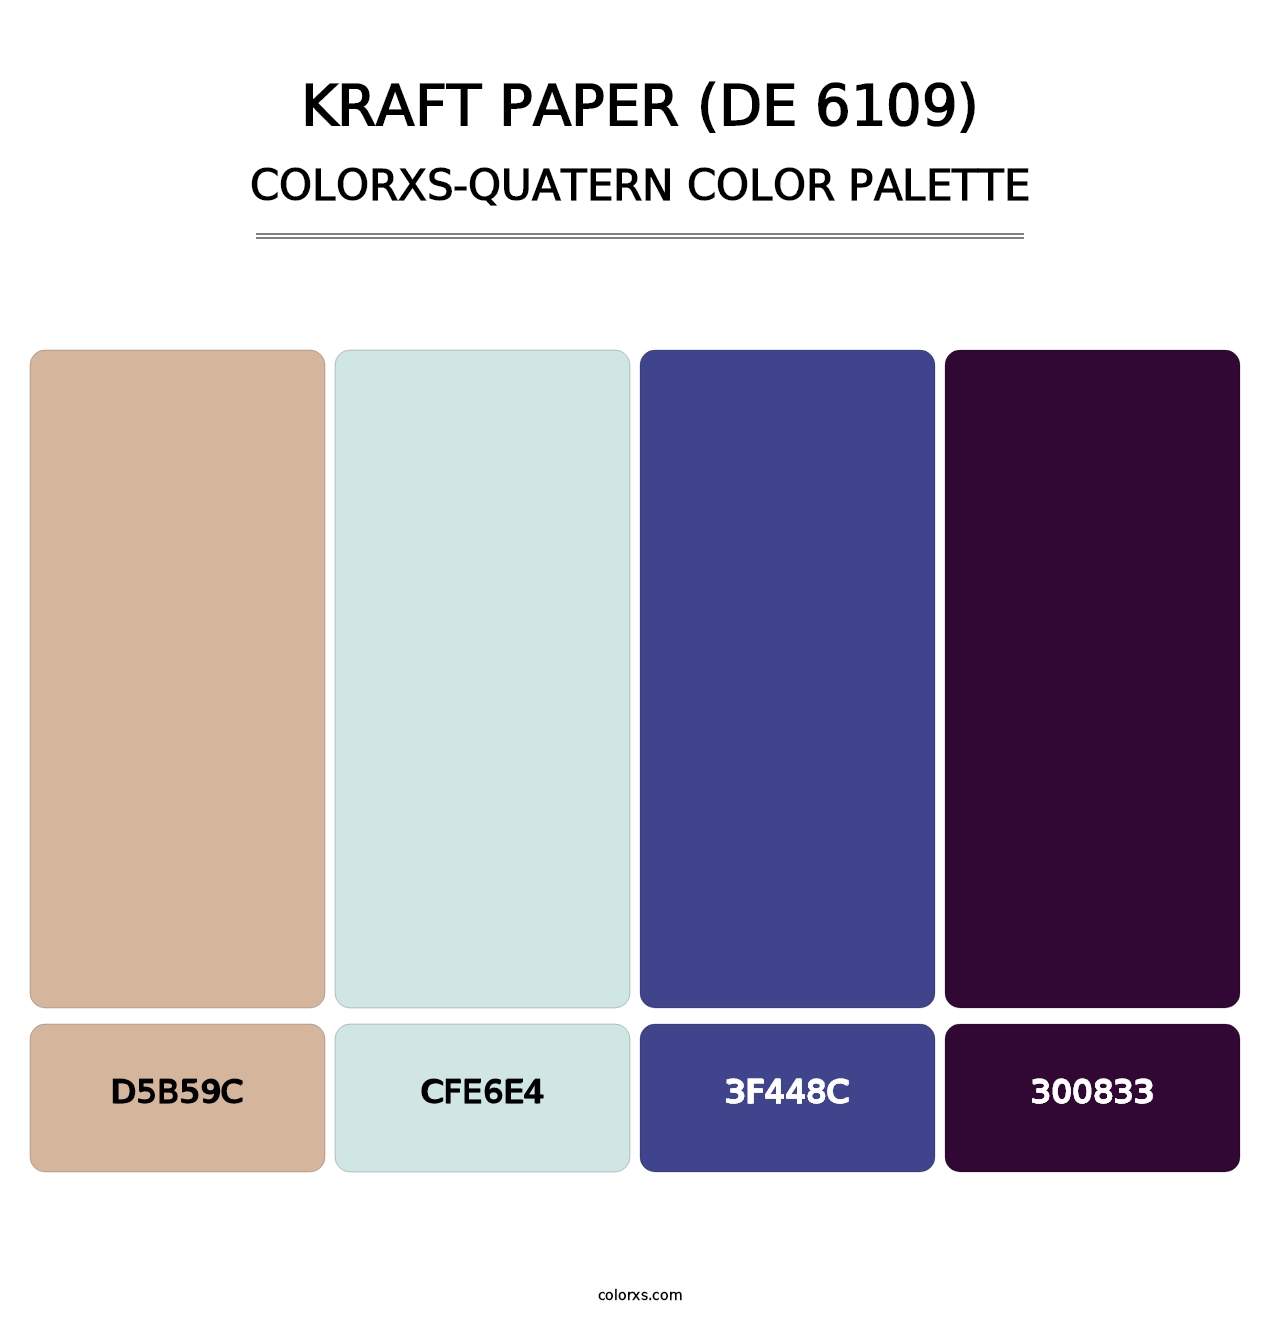 Kraft Paper (DE 6109) - Colorxs Quatern Palette